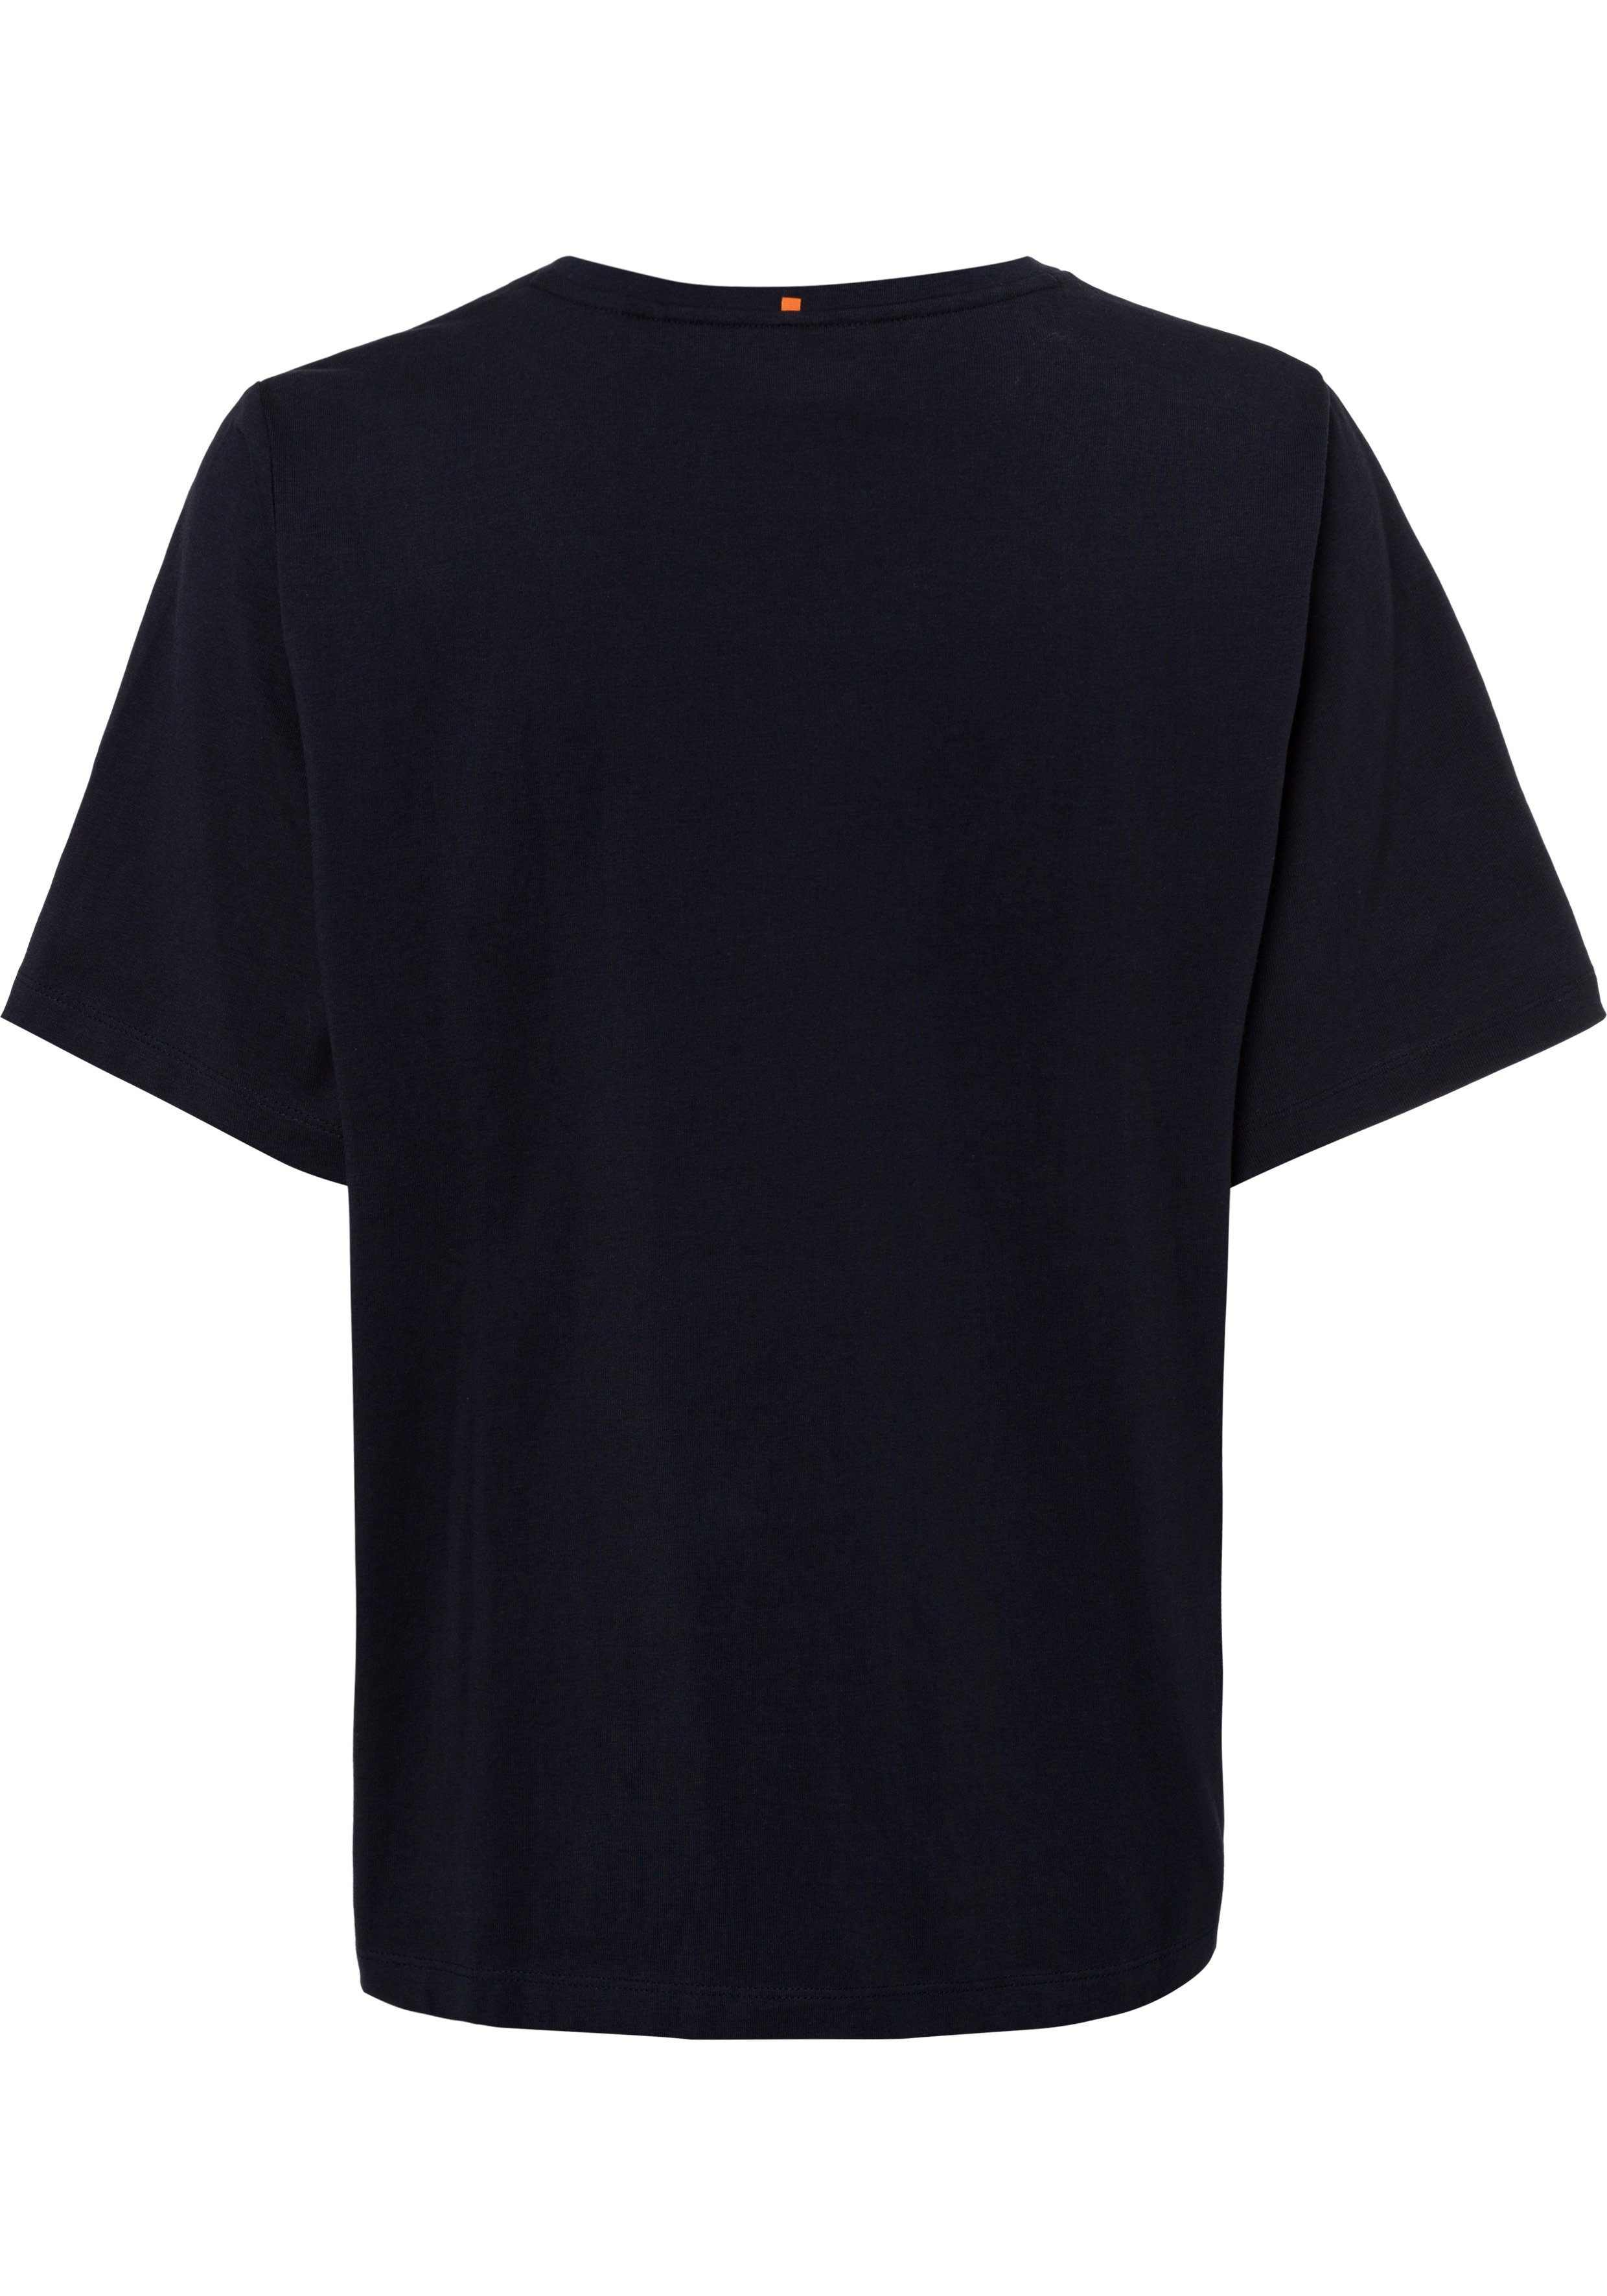 T-Shirt innen navy am BOSS mit BOSS-Kontrastband ORANGE Ausschnitt